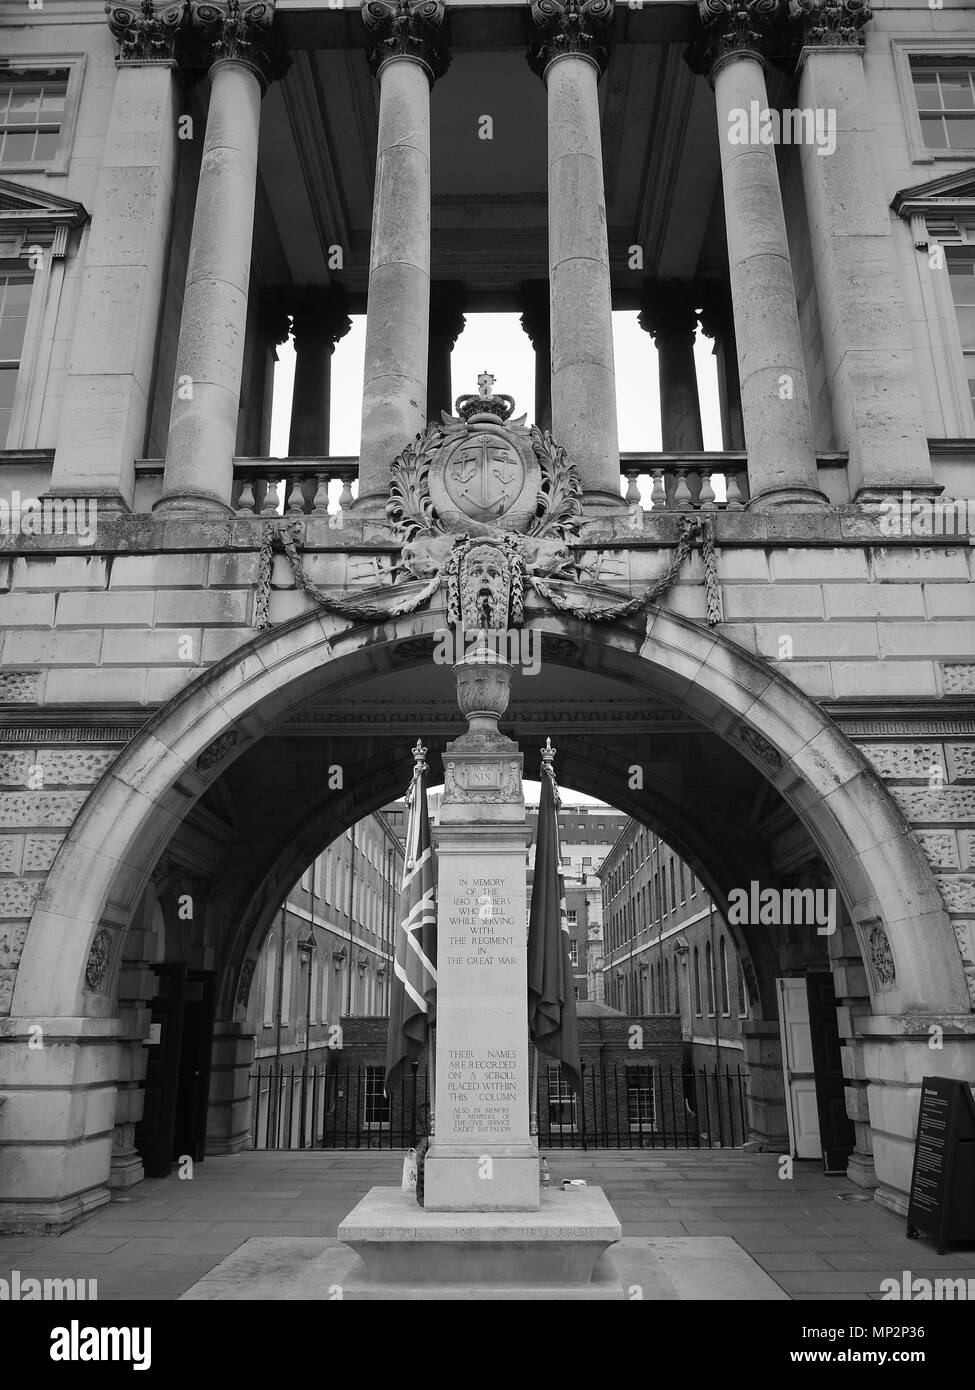 LONDON - 21. MAI 2018: (Bild digital geändert werden monochrom) Allgemeine Ansicht des Somerset House ist ein großes neoklassischen Gebäude im Süden Stockfoto